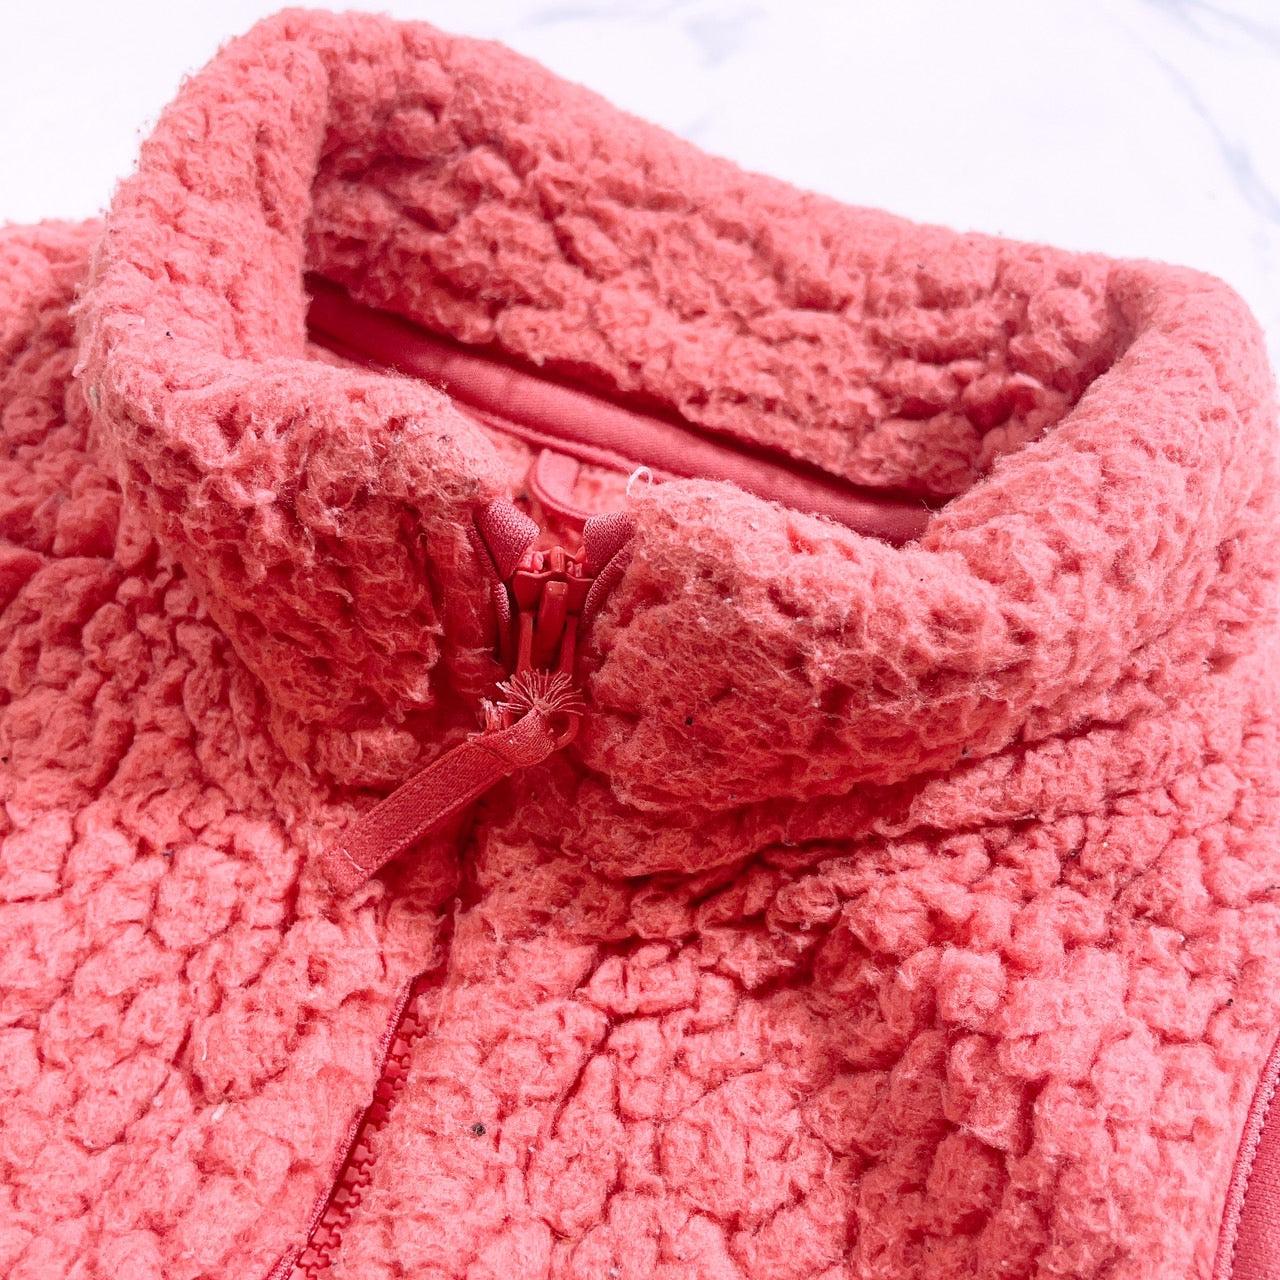 【27985】 UNIQLO ユニクロ ベスト サイズ110 ピンク ノースリーブジャケット ハイネック ジップアップ 裏起毛 防寒着 可愛い キッズ